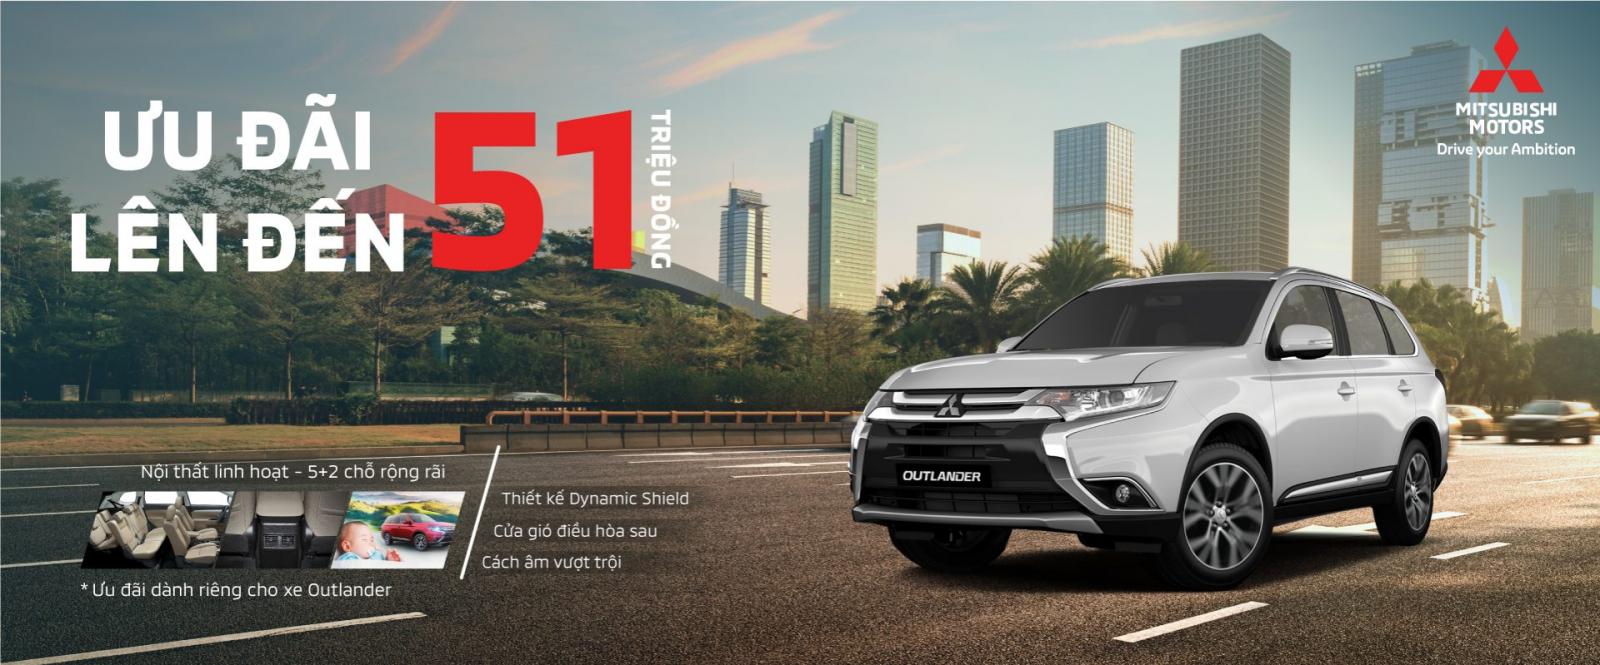 Khuyến mại tháng 6/2019 của Mitsubishi Việt Nam: Thêm ưu đãi cho Mirage, Attrage a2